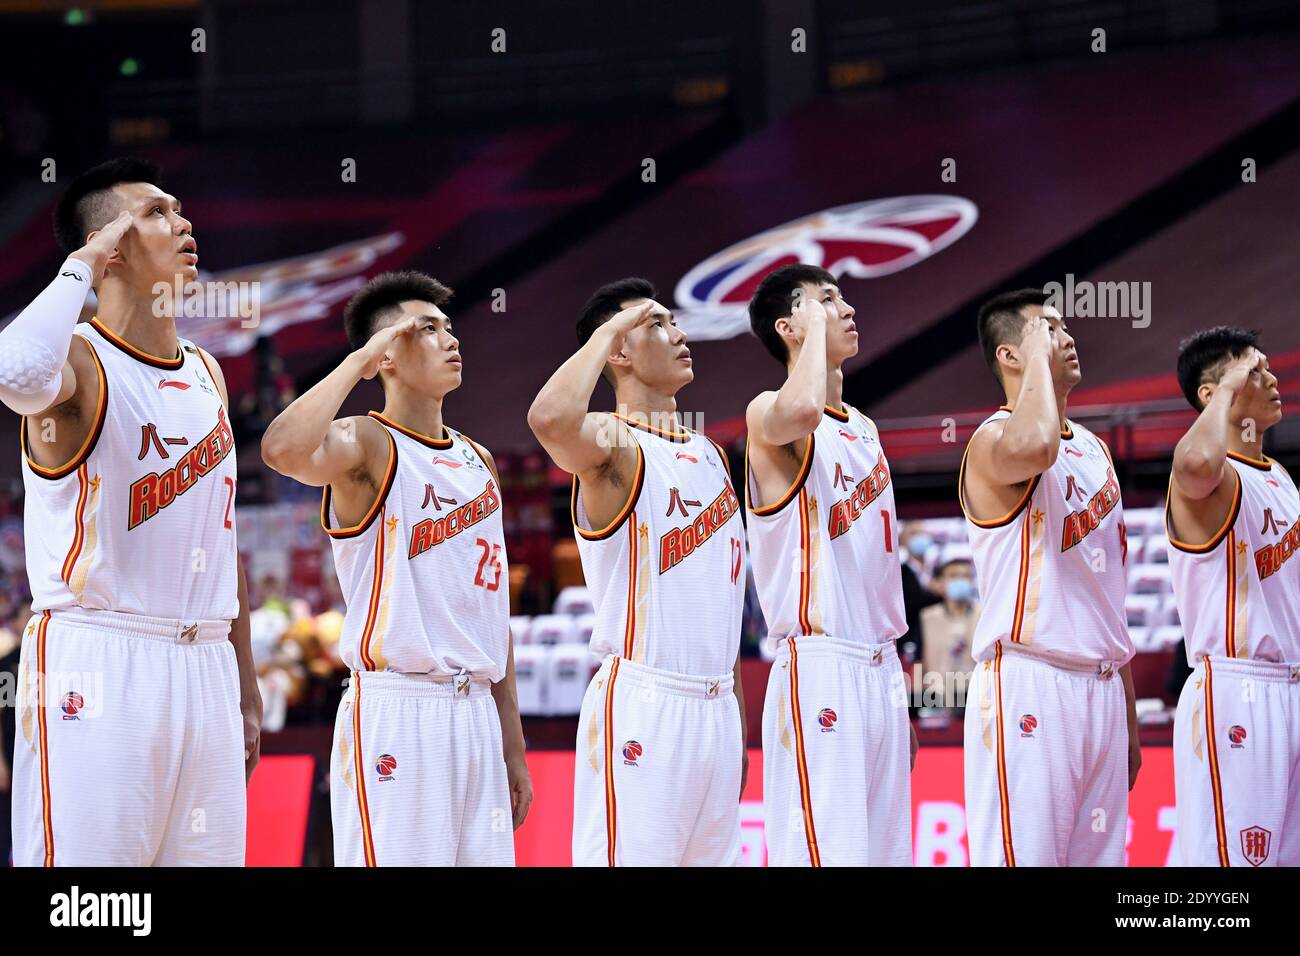 (201228) -- BEIJING, le 28 décembre 2020 (Xinhua) -- des joueurs de Bayi Rockets, une équipe militaire chinoise de basket-ball, saluent lors de la cérémonie de levée de drapeau devant un match entre Bayi Rockets et Zhejiang Lions à la ligue de l'Association chinoise de basket-ball (CBA) 2019/20 à Qingdao, dans la province de Shandong, en Chine orientale, le 14 juillet 2020. Le 20 octobre, une conférence s'est tenue à Beijing sur l'ajustement et la réforme des sports militaires chinois, marquant des changements importants dans la fonction, l'échelle et la structure des équipes sportives militaires chinoises. Ces équipes ne participeront plus à des réunions sportives complètes ou Banque D'Images